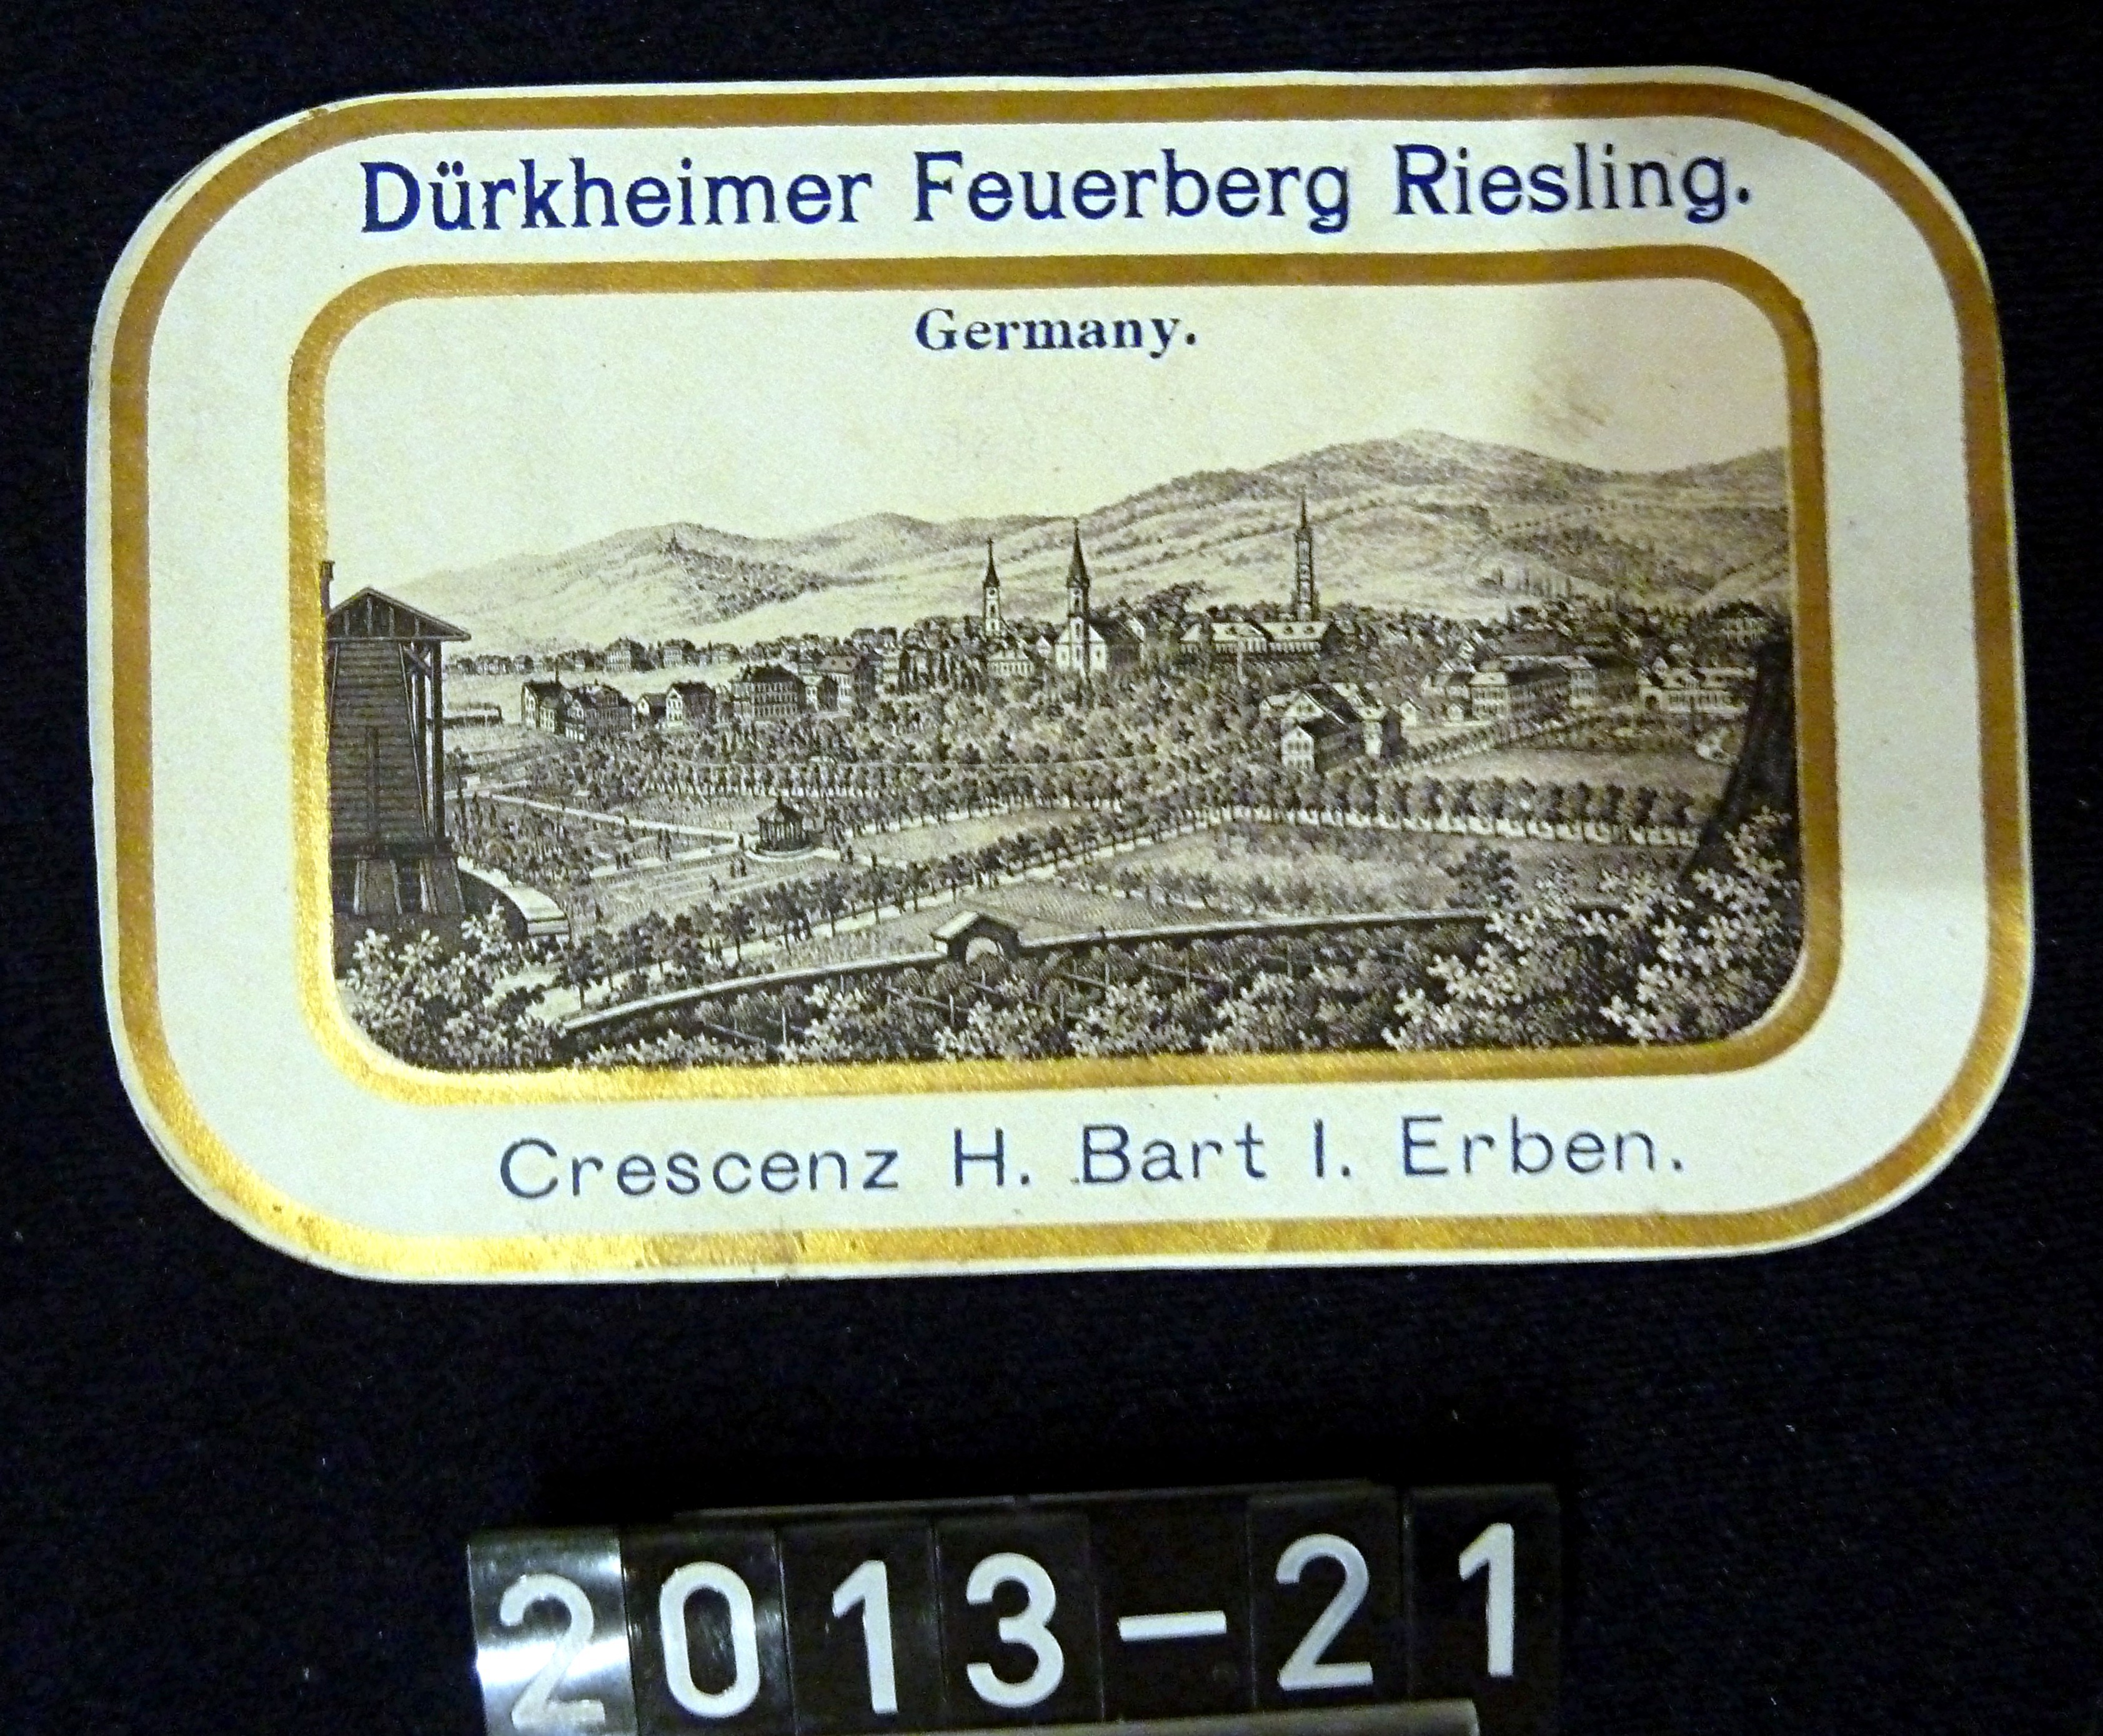 Etikett; Weinetikett: "Dürkheimer Feuerberg Riesling"; Weingut Crescenz Bart I.Erben; um 1900 (Stadtmuseum Bad Dürkheim, Museumsgesellschaft Bad Dürkheim e.V. CC BY-NC-SA)